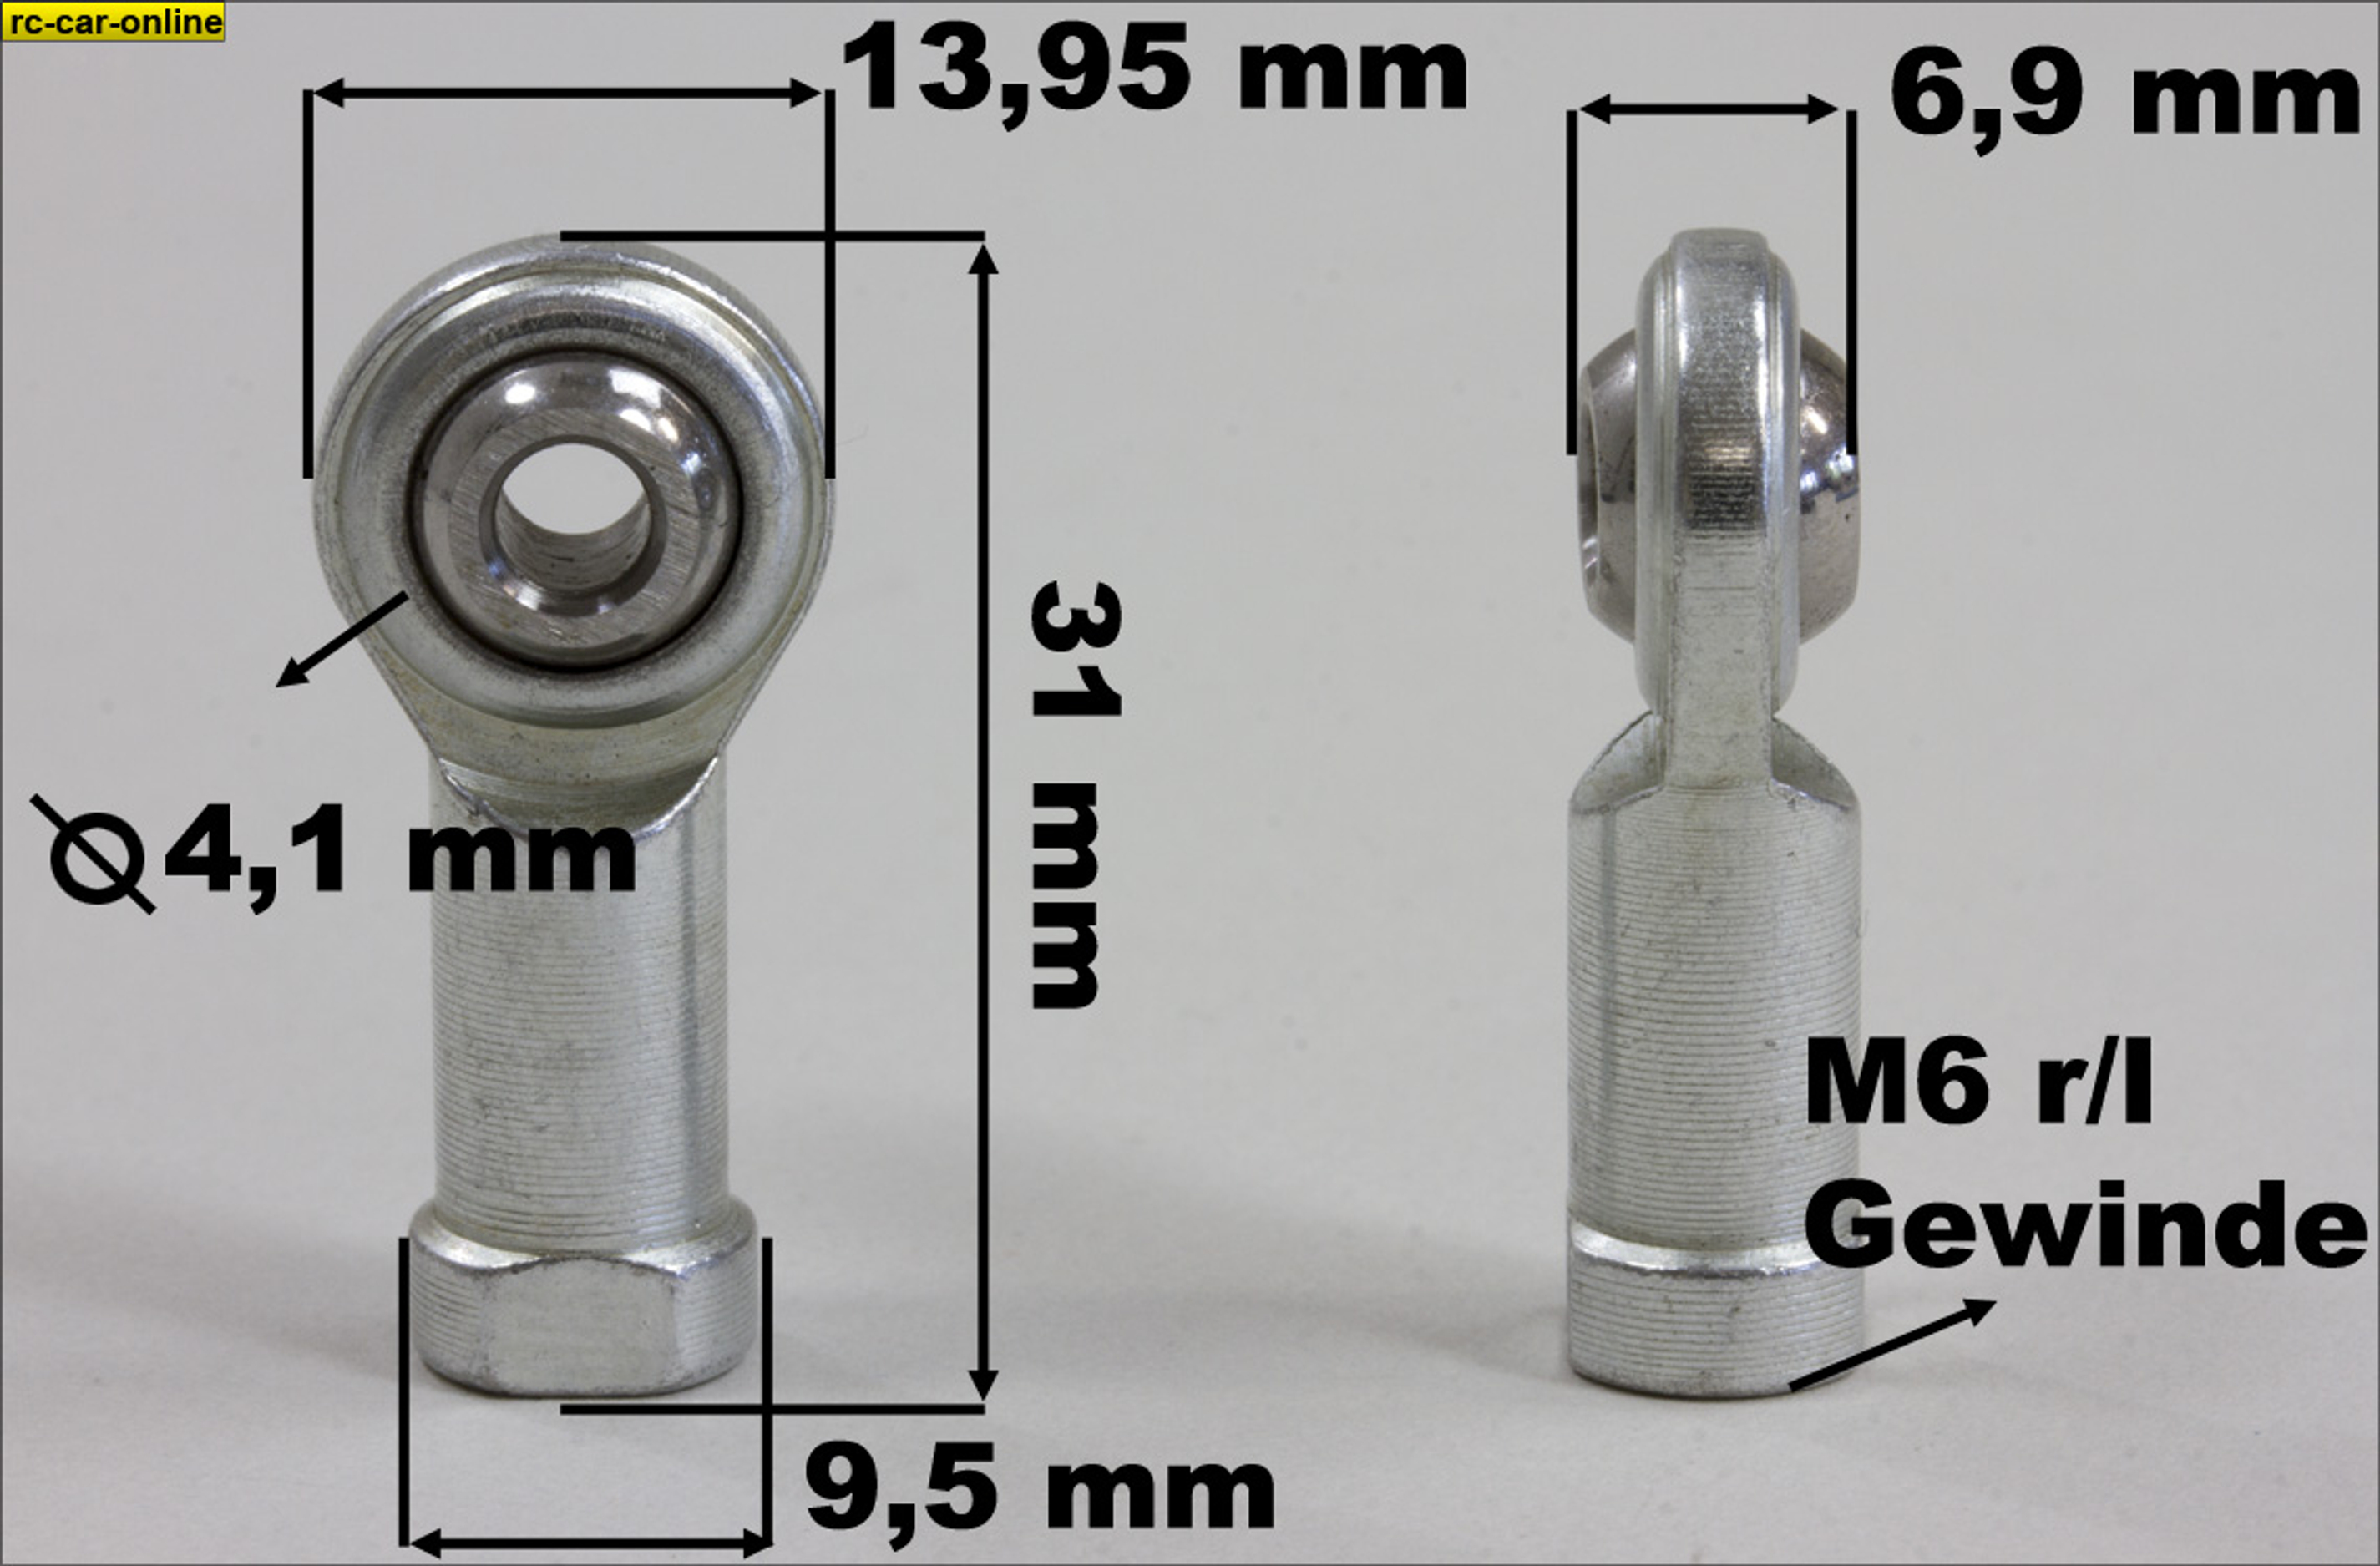 y0529 Stahlkugelpfanne 6 mm rechts/links-Gewinde + 4 mm Kugelbohrung